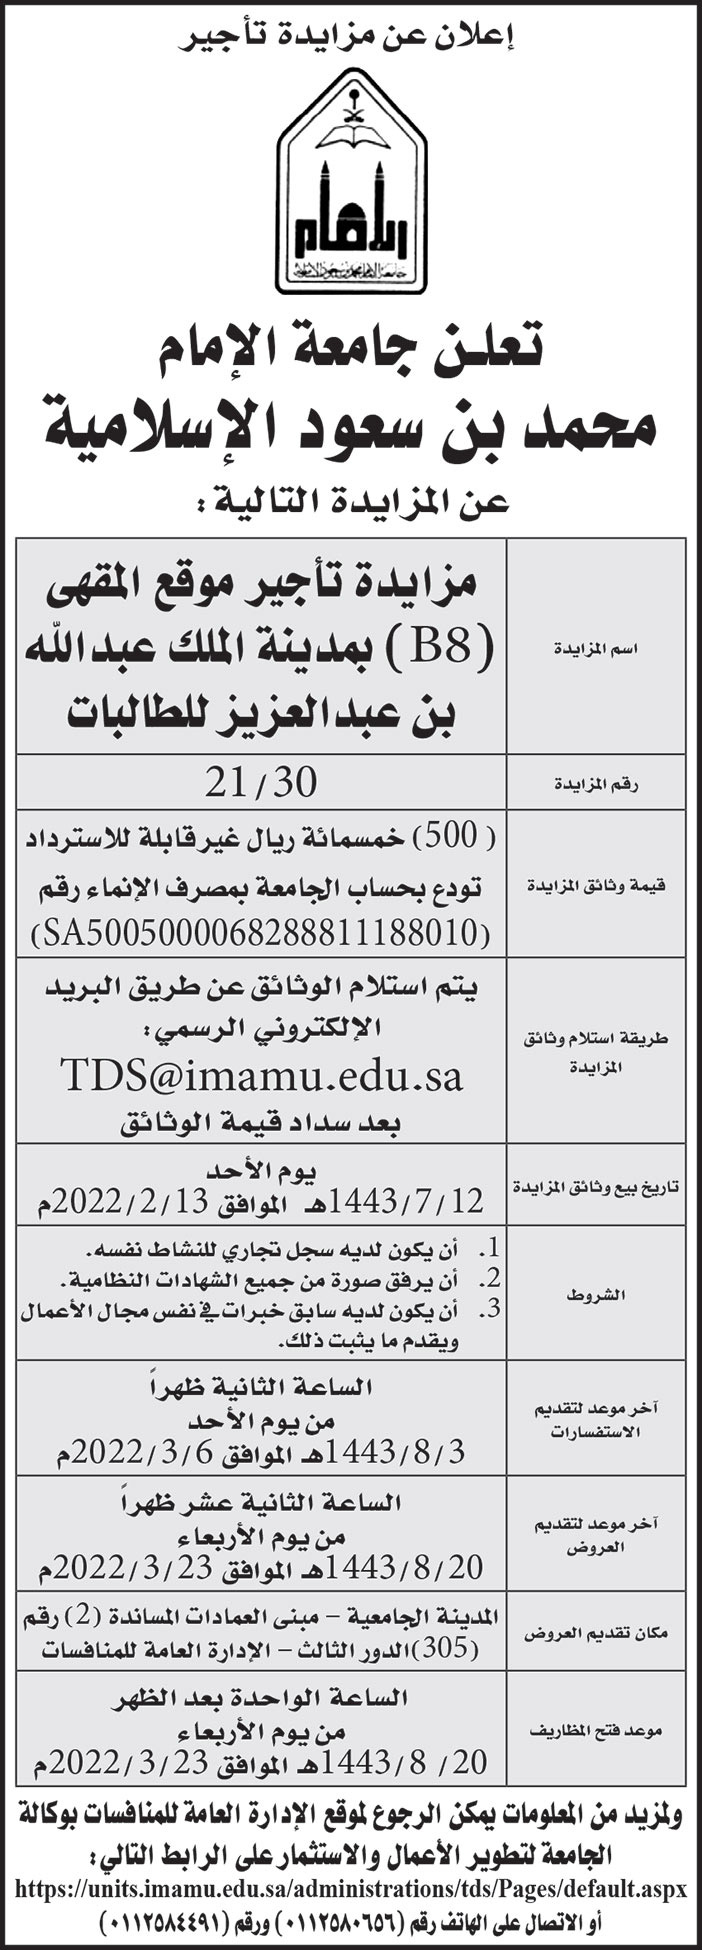 جامعة الإمام محمد بن سعود الإسلامية تعلن عن مزايدة تأجير موقع المقهى (B8) بمدينة الملك عبدالله بن عبدالعزيز للطالبات 